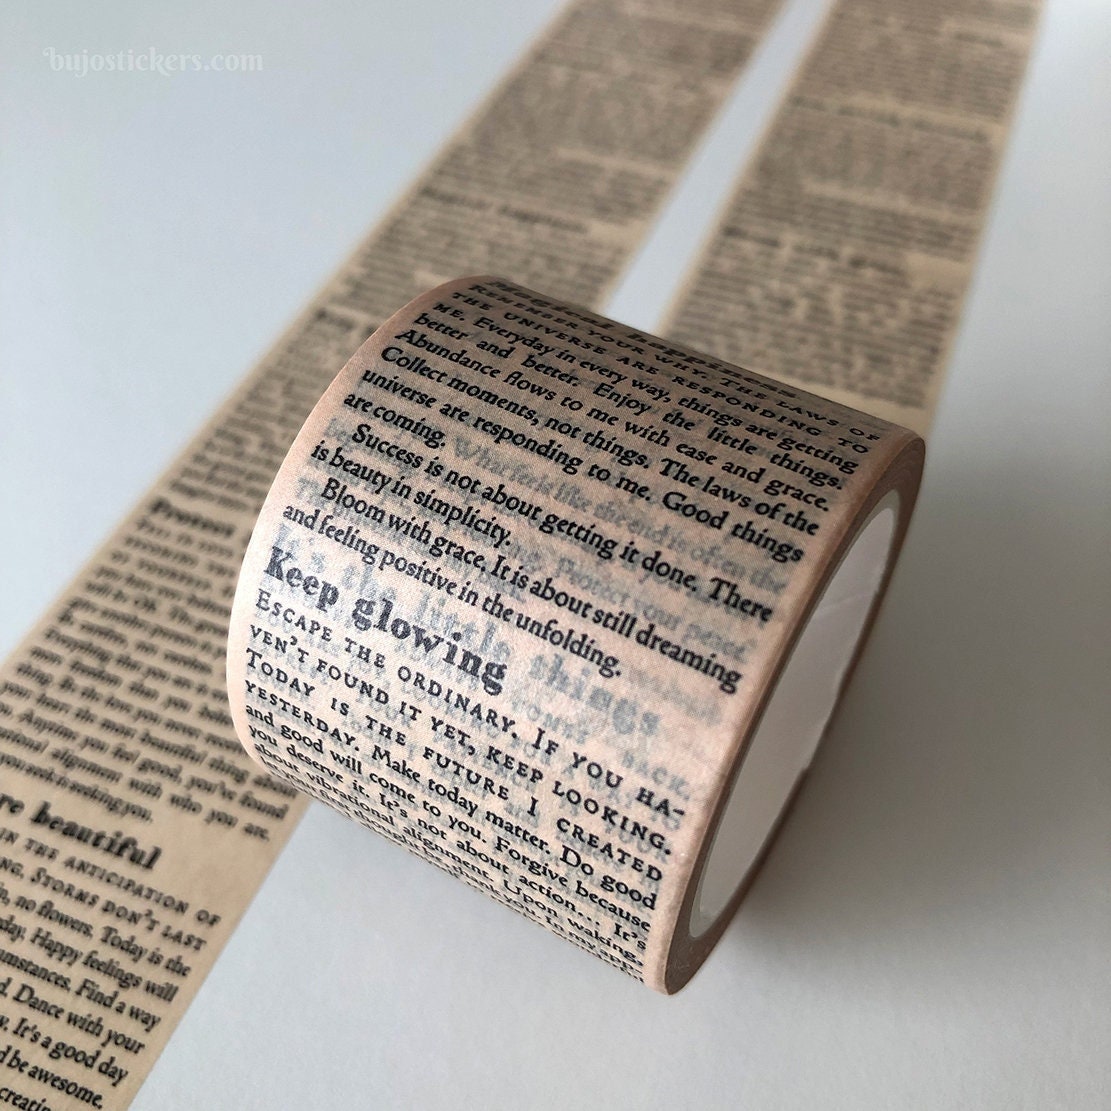 Vintage Washi Tape Samples Decorative Tape for Crafts Planner